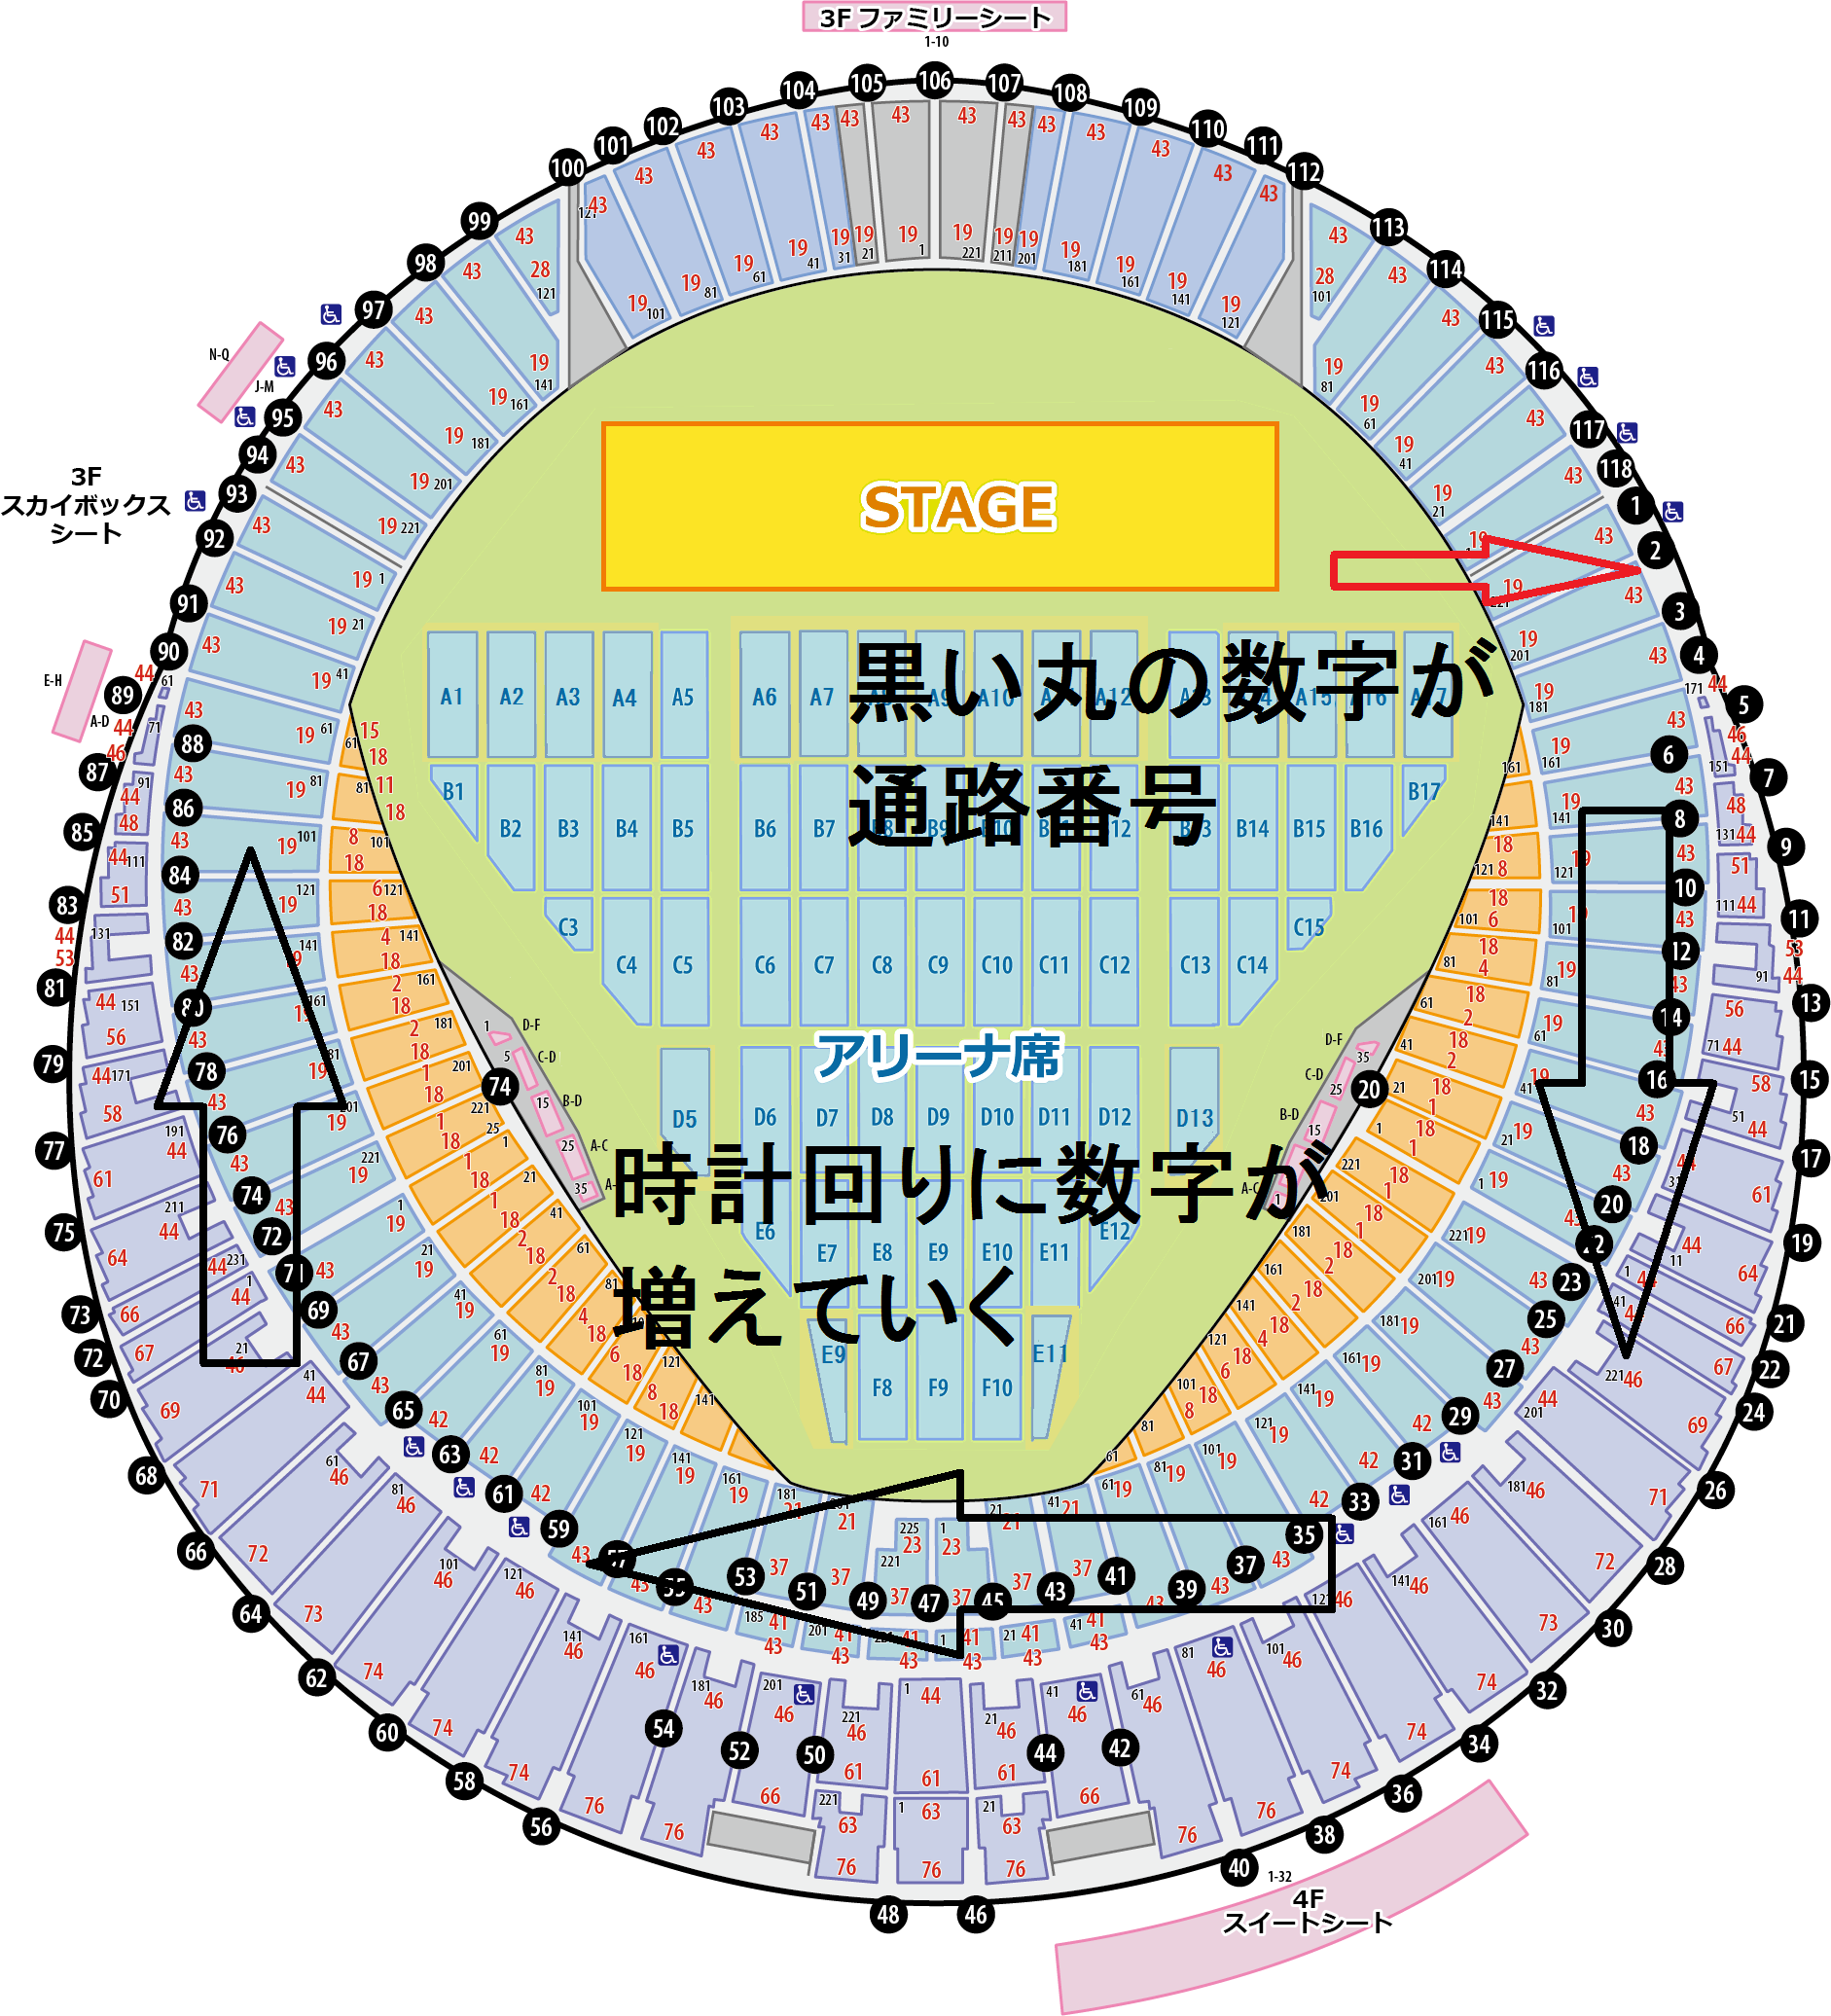 札幌ドーム スタンド席の座席表と見え方